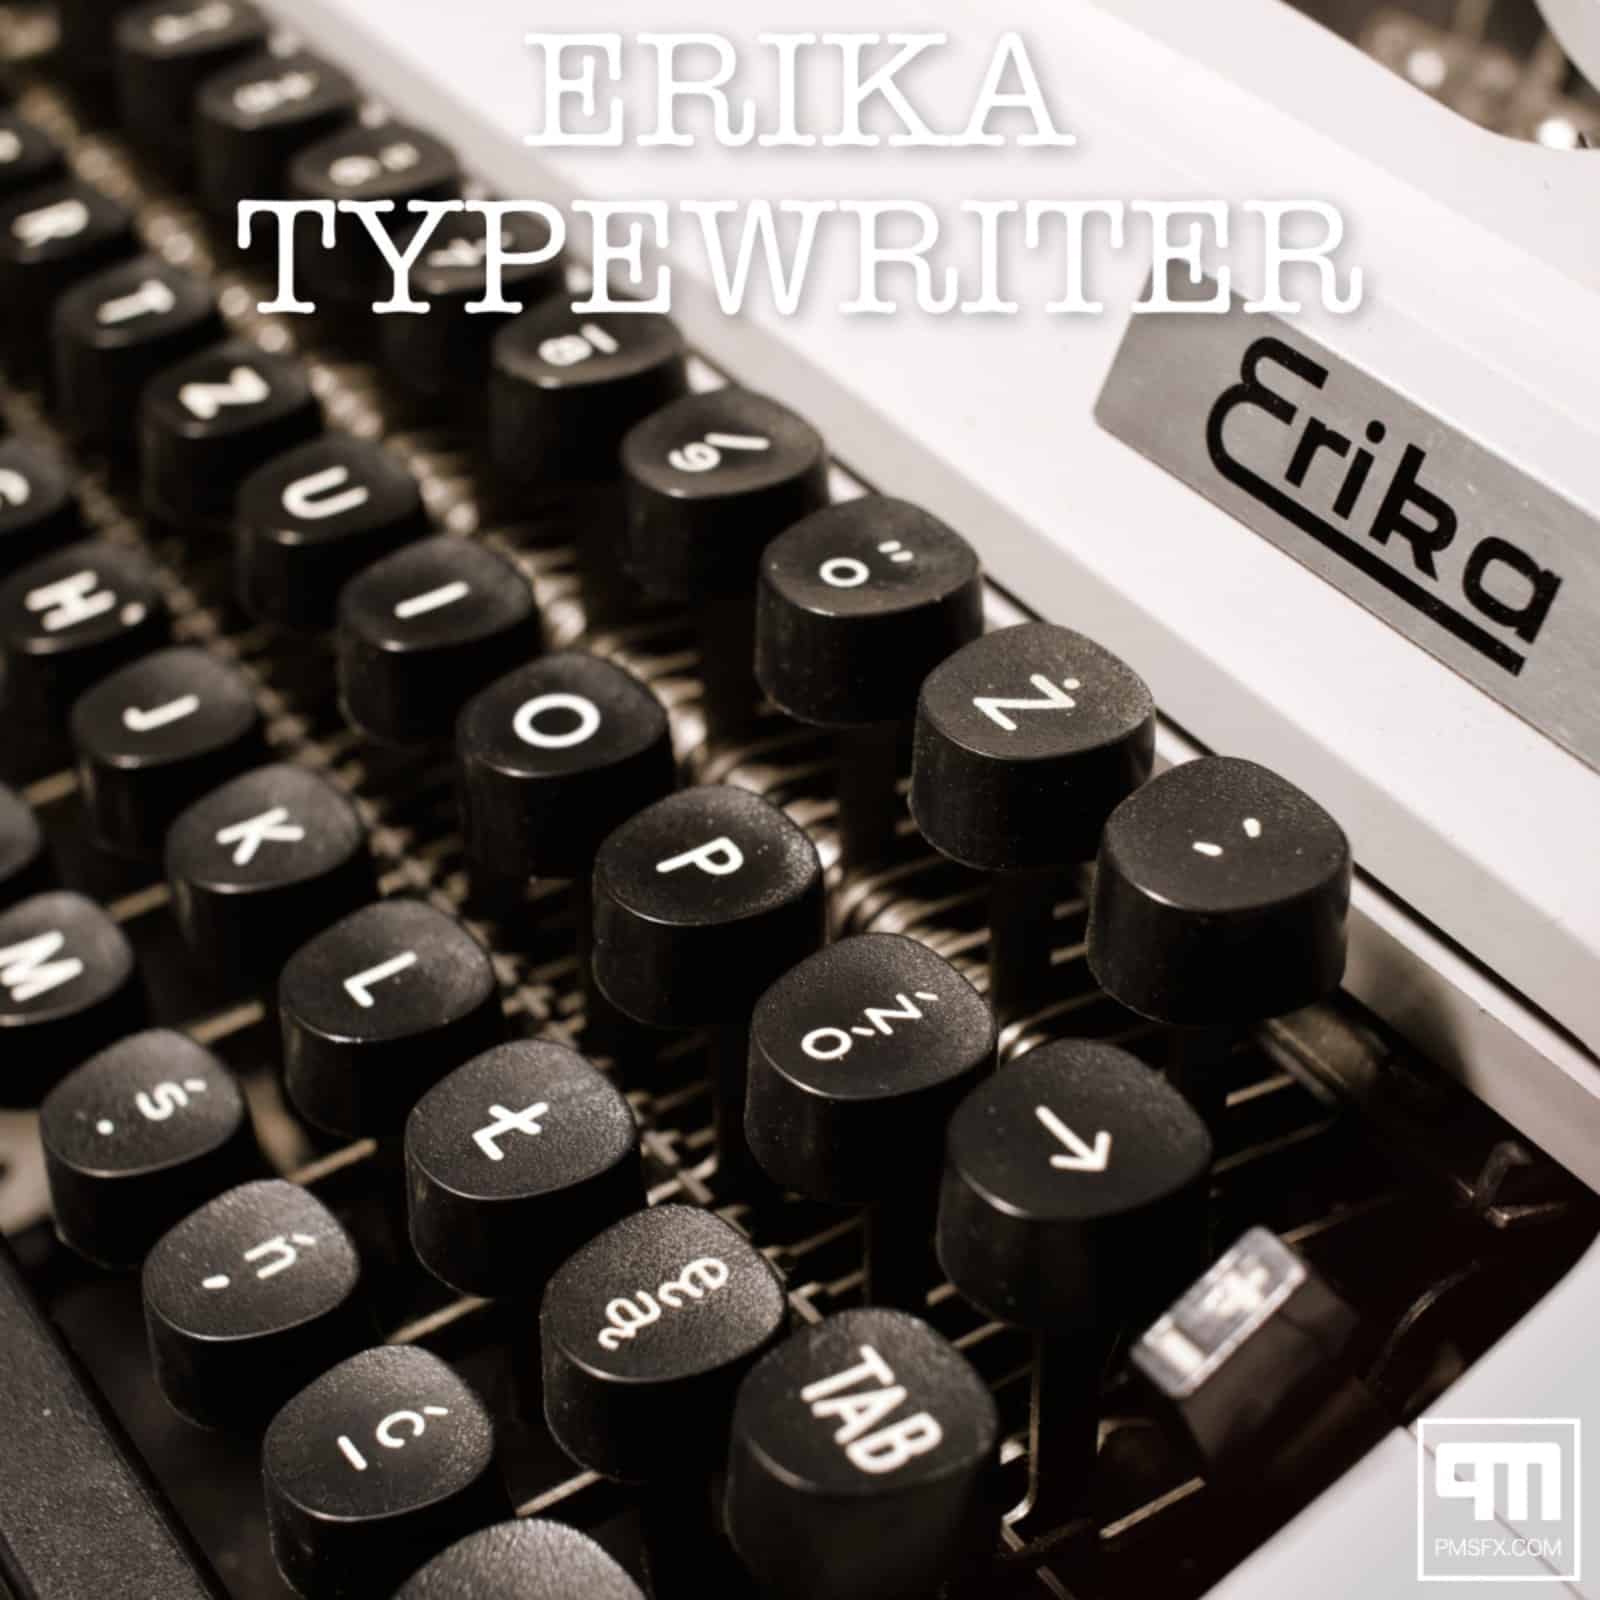 PMSFX-Launches-Erika-Typewriter